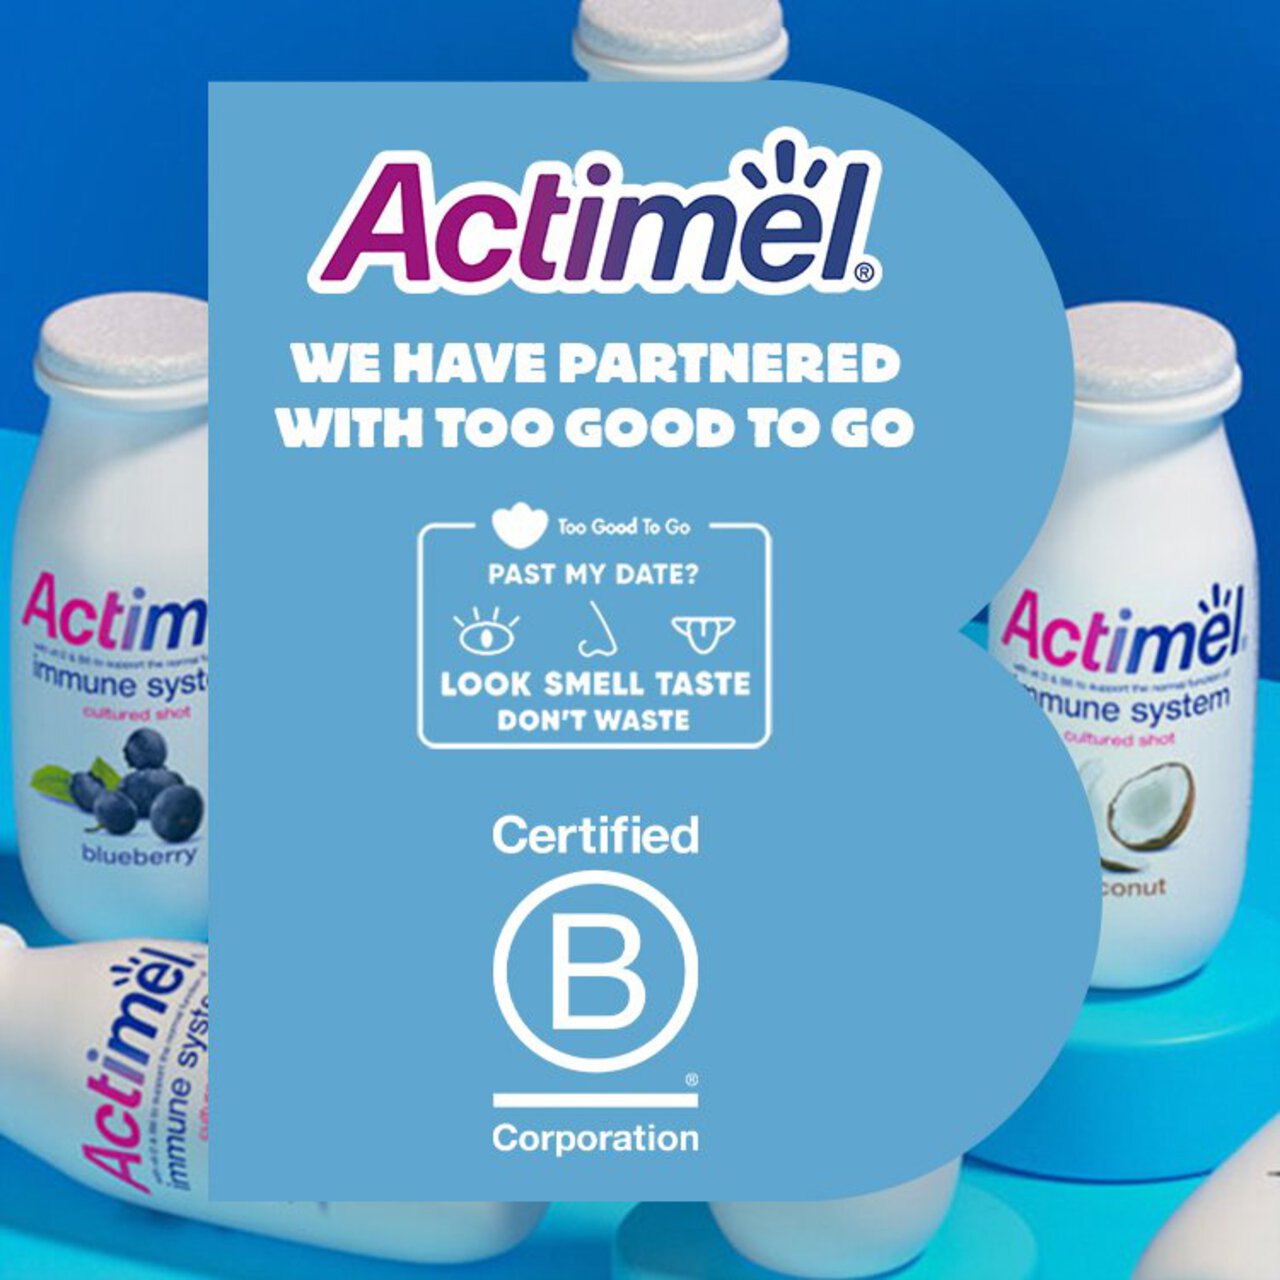 Actimel Original 0% Added Sugar Fat Free Yoghurt Drink 8 x 100g